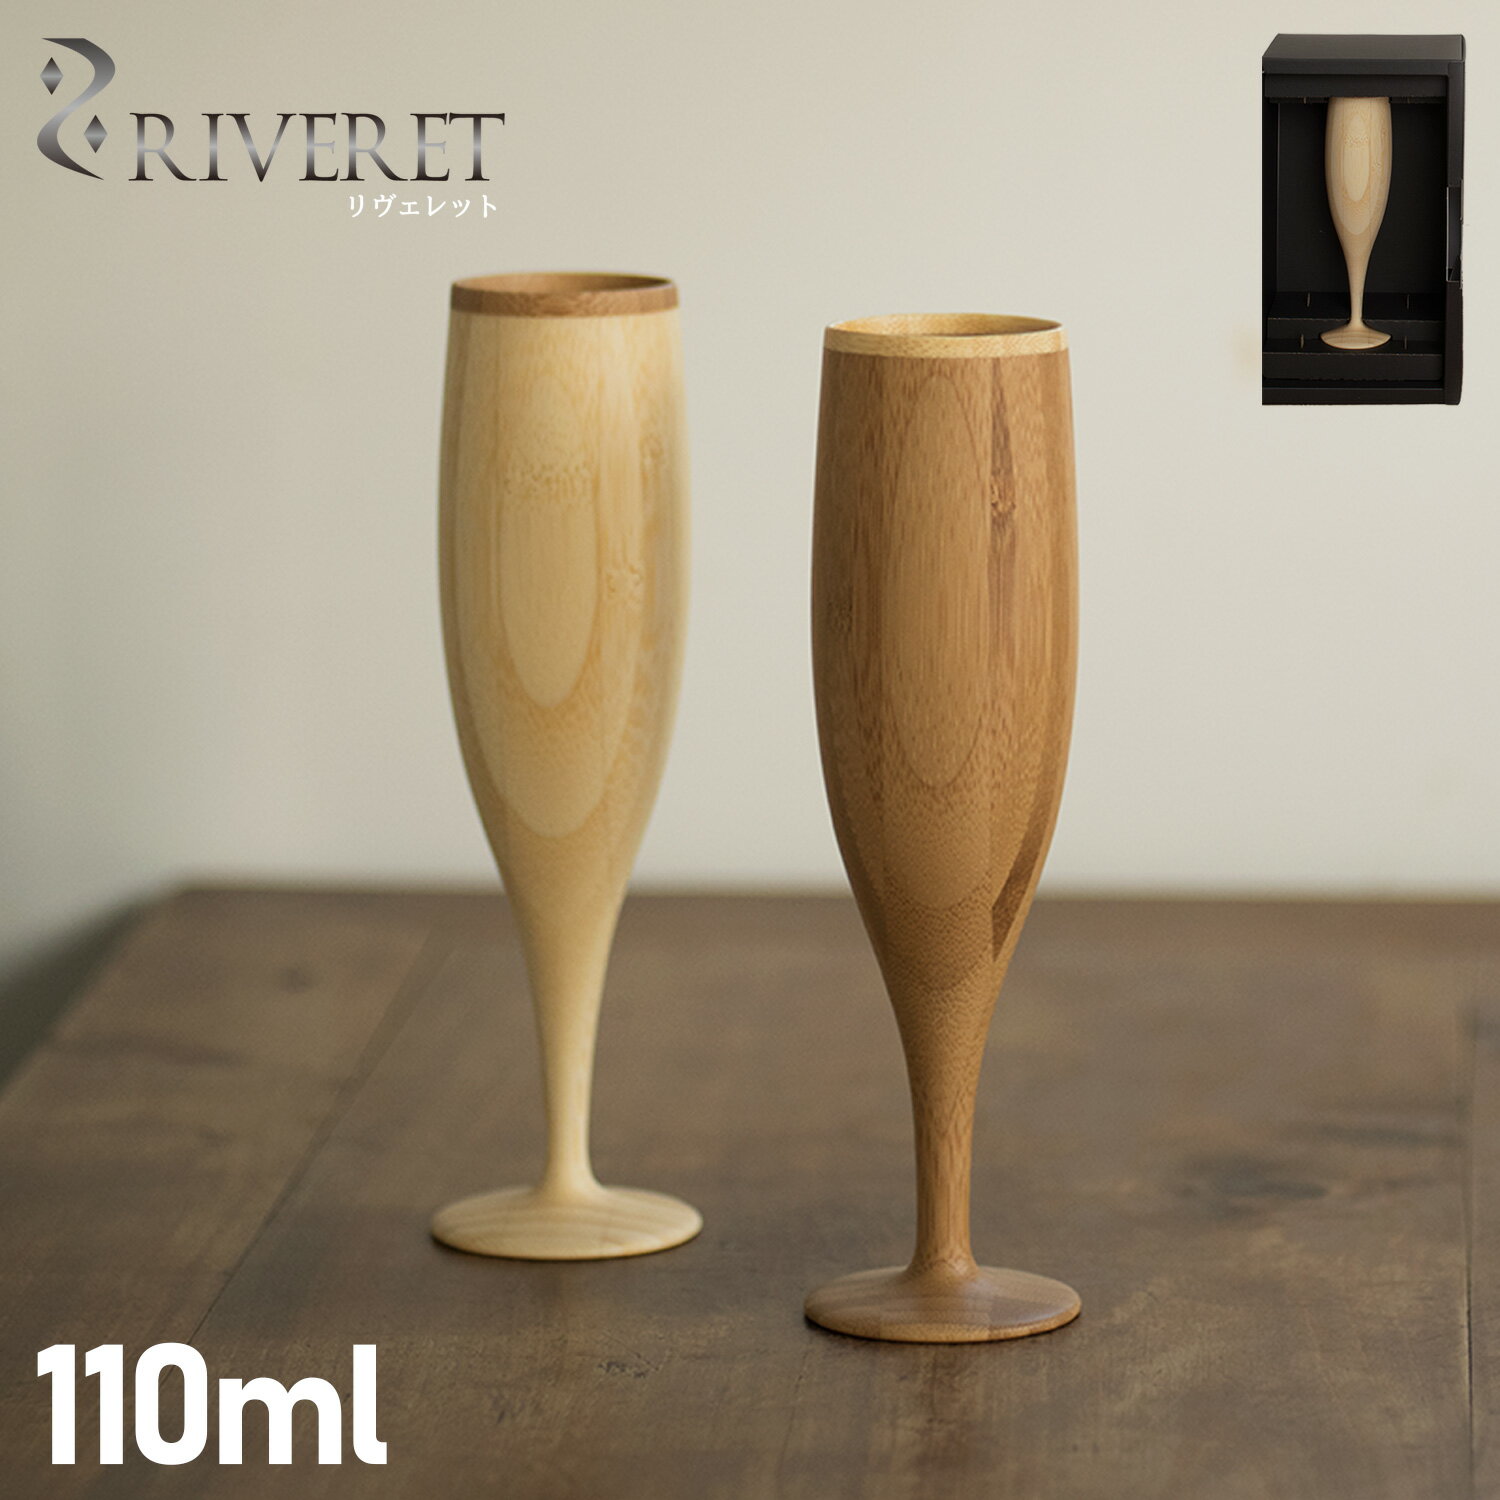 リヴェレット RIVERET グラス シャンパングラス フルート 110ml 割れない 天然素材 日本製 軽量 食洗器対応 FLUTE ホワイト ブラウン 白 RV-107 母の日